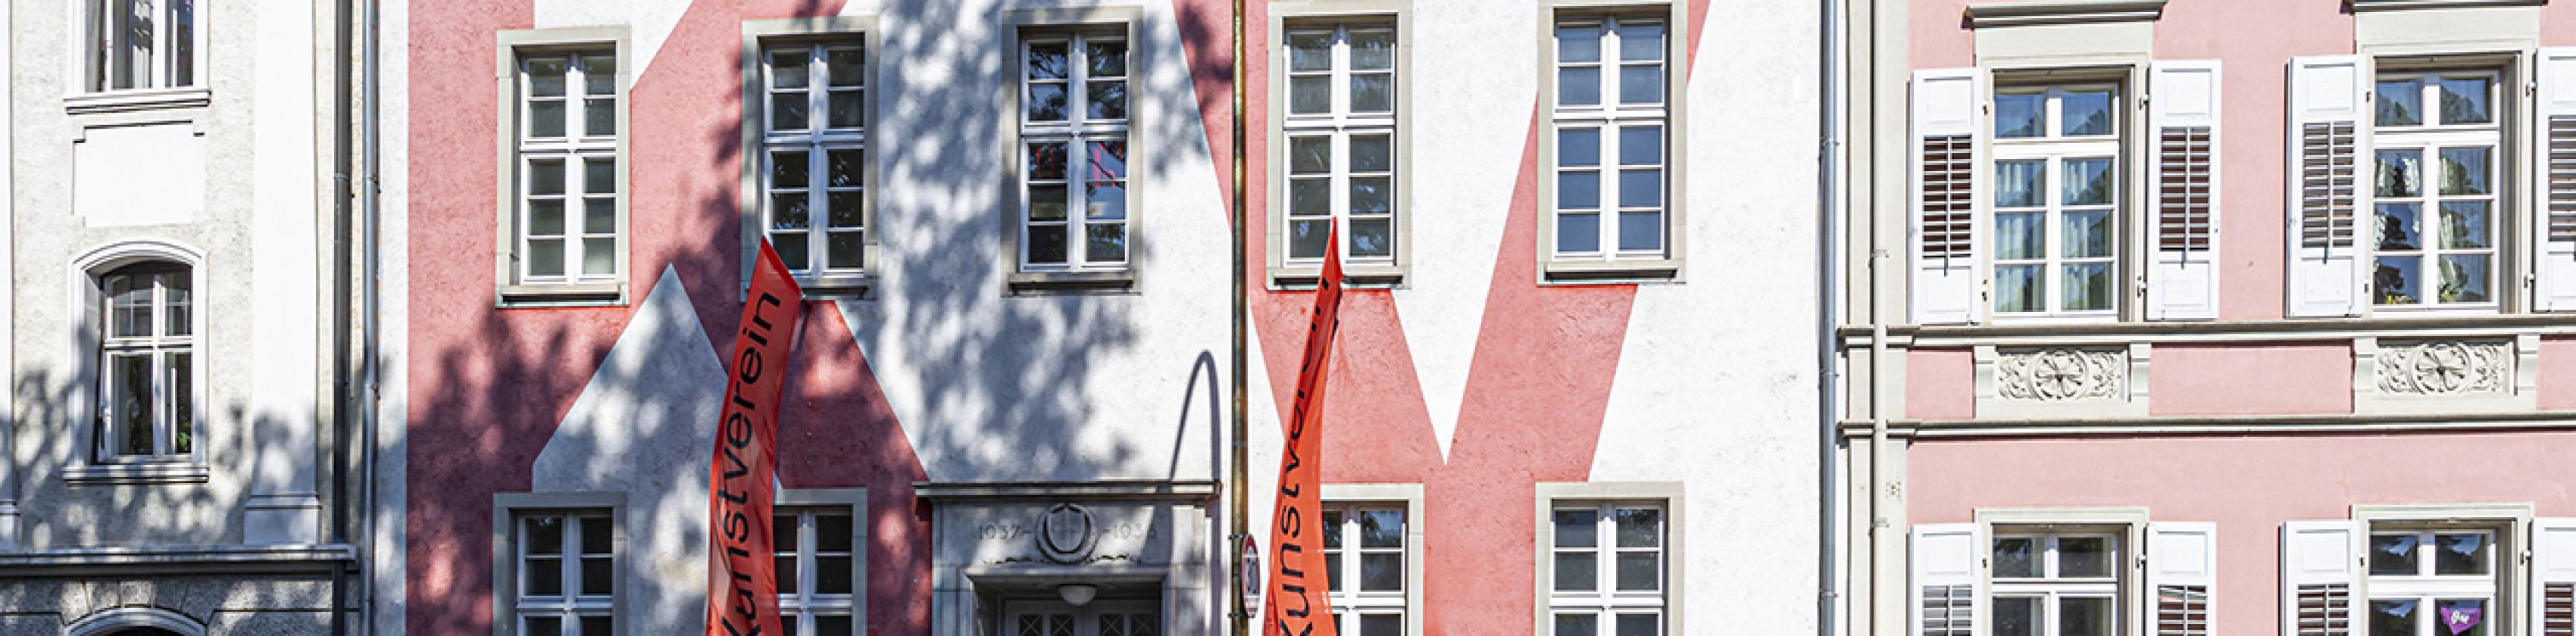 Kunstverein-Freiburg-FWTM-Spiegelhalter.7